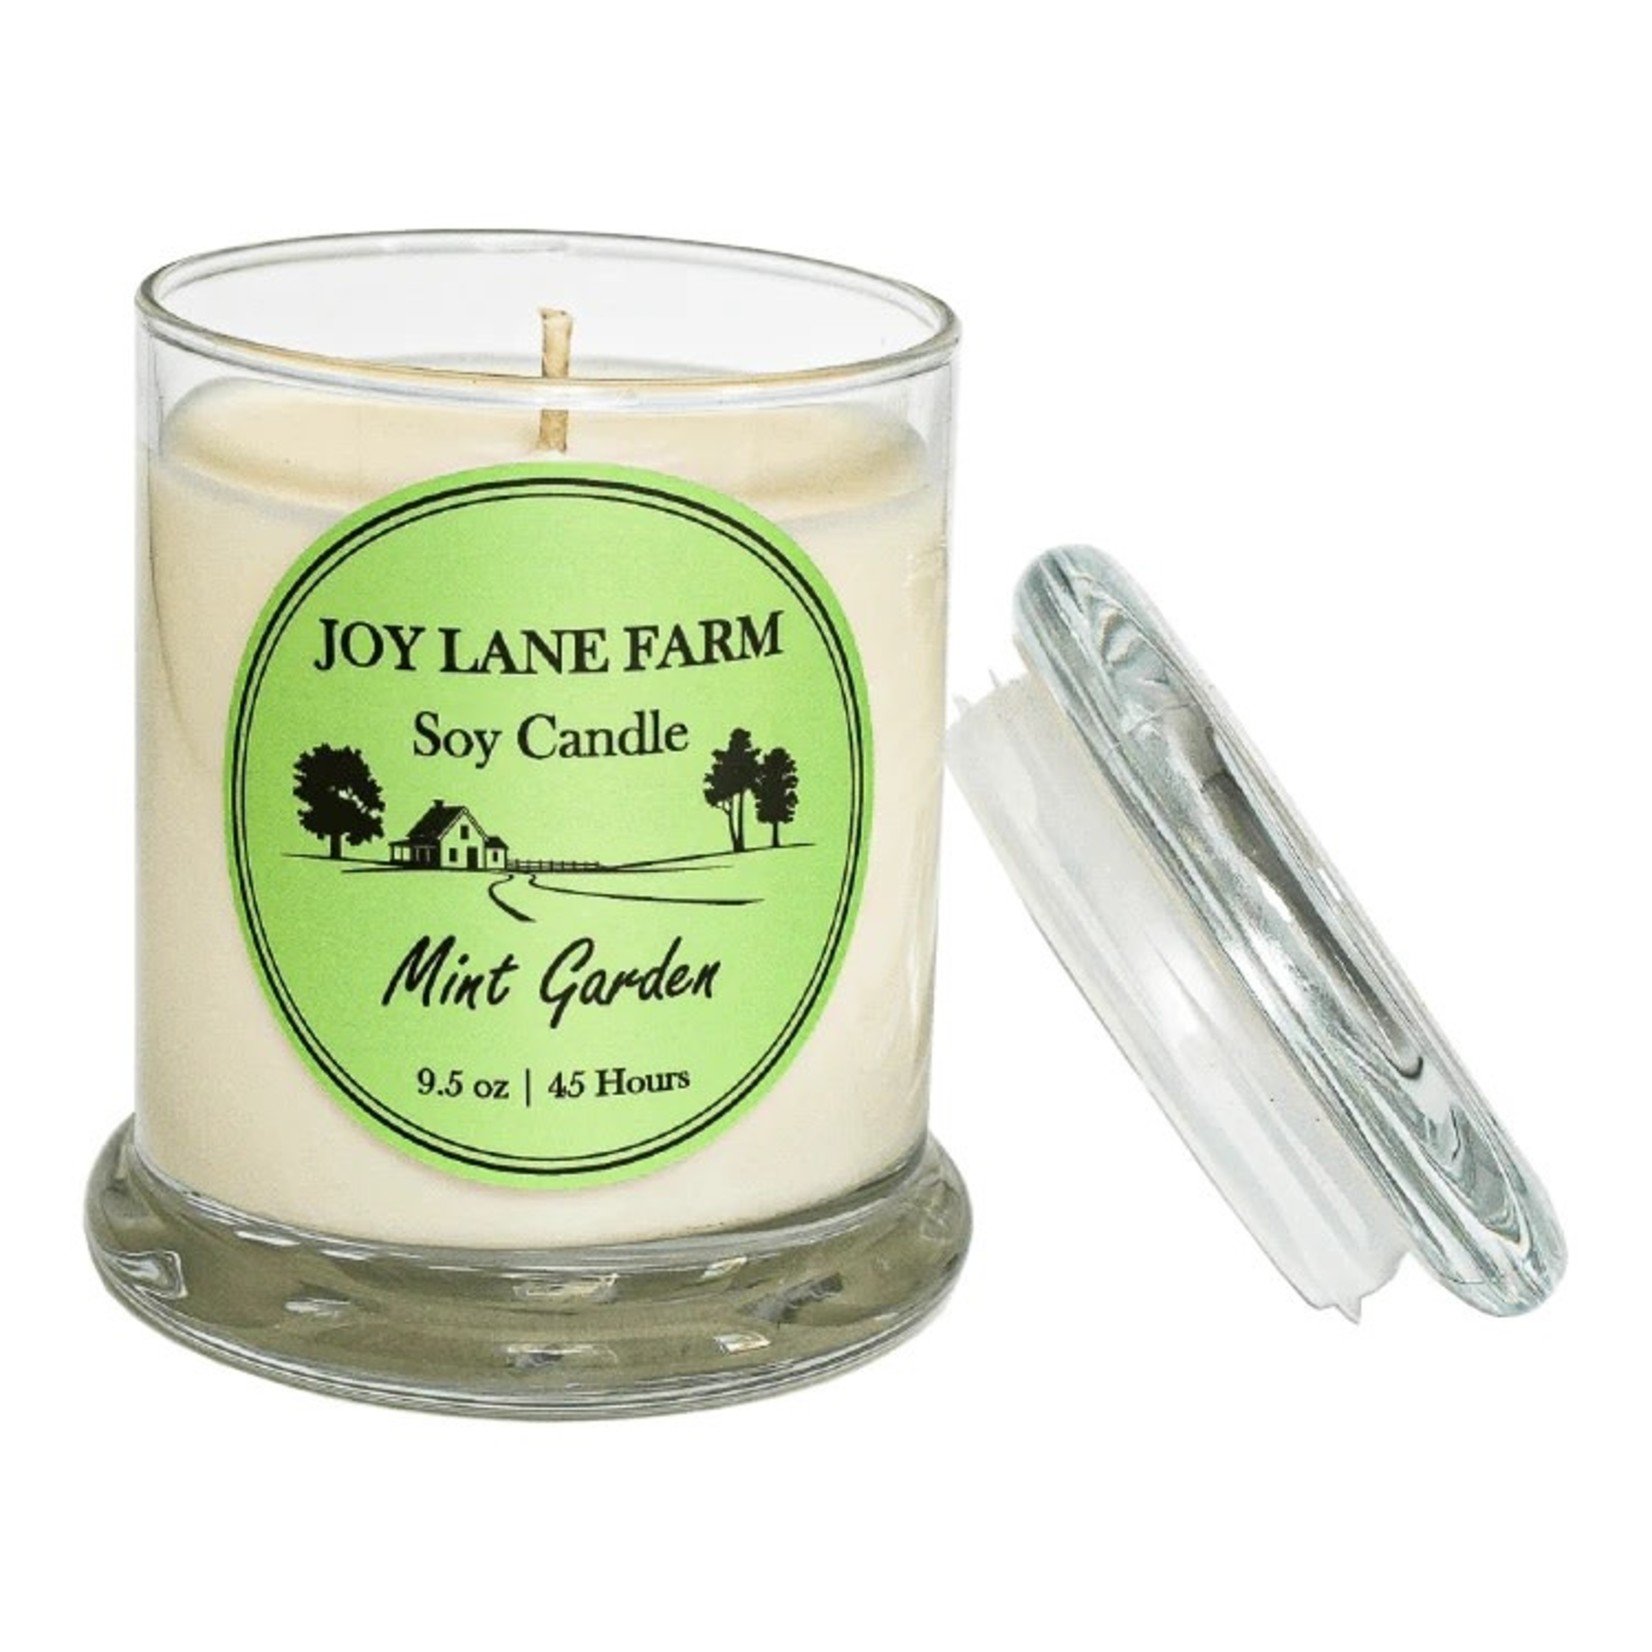 Mint Garden - Non-toxic, Farmhouse, Country, Soy Candle | 9.5 oz